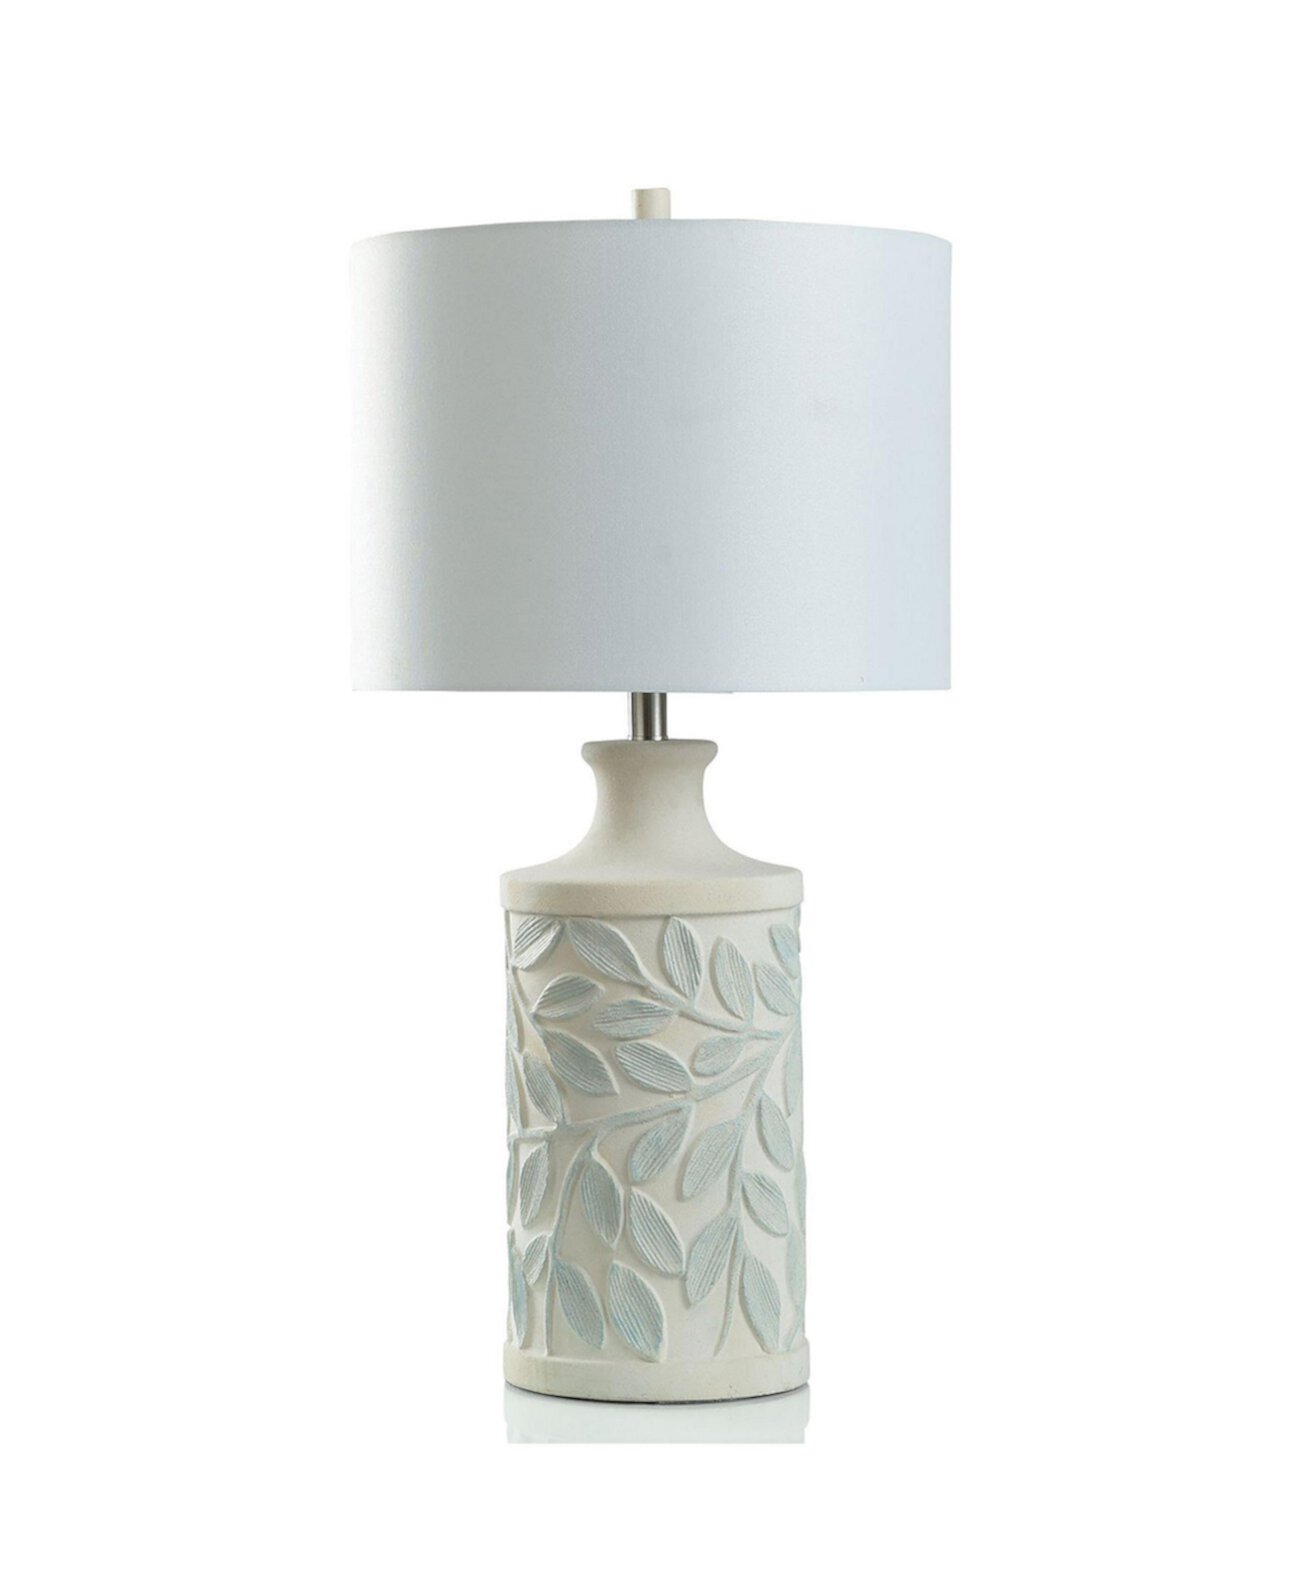 30-дюймовая двухцветная настольная лампа с текстурированным листовым мотивом StyleCraft Home Collection